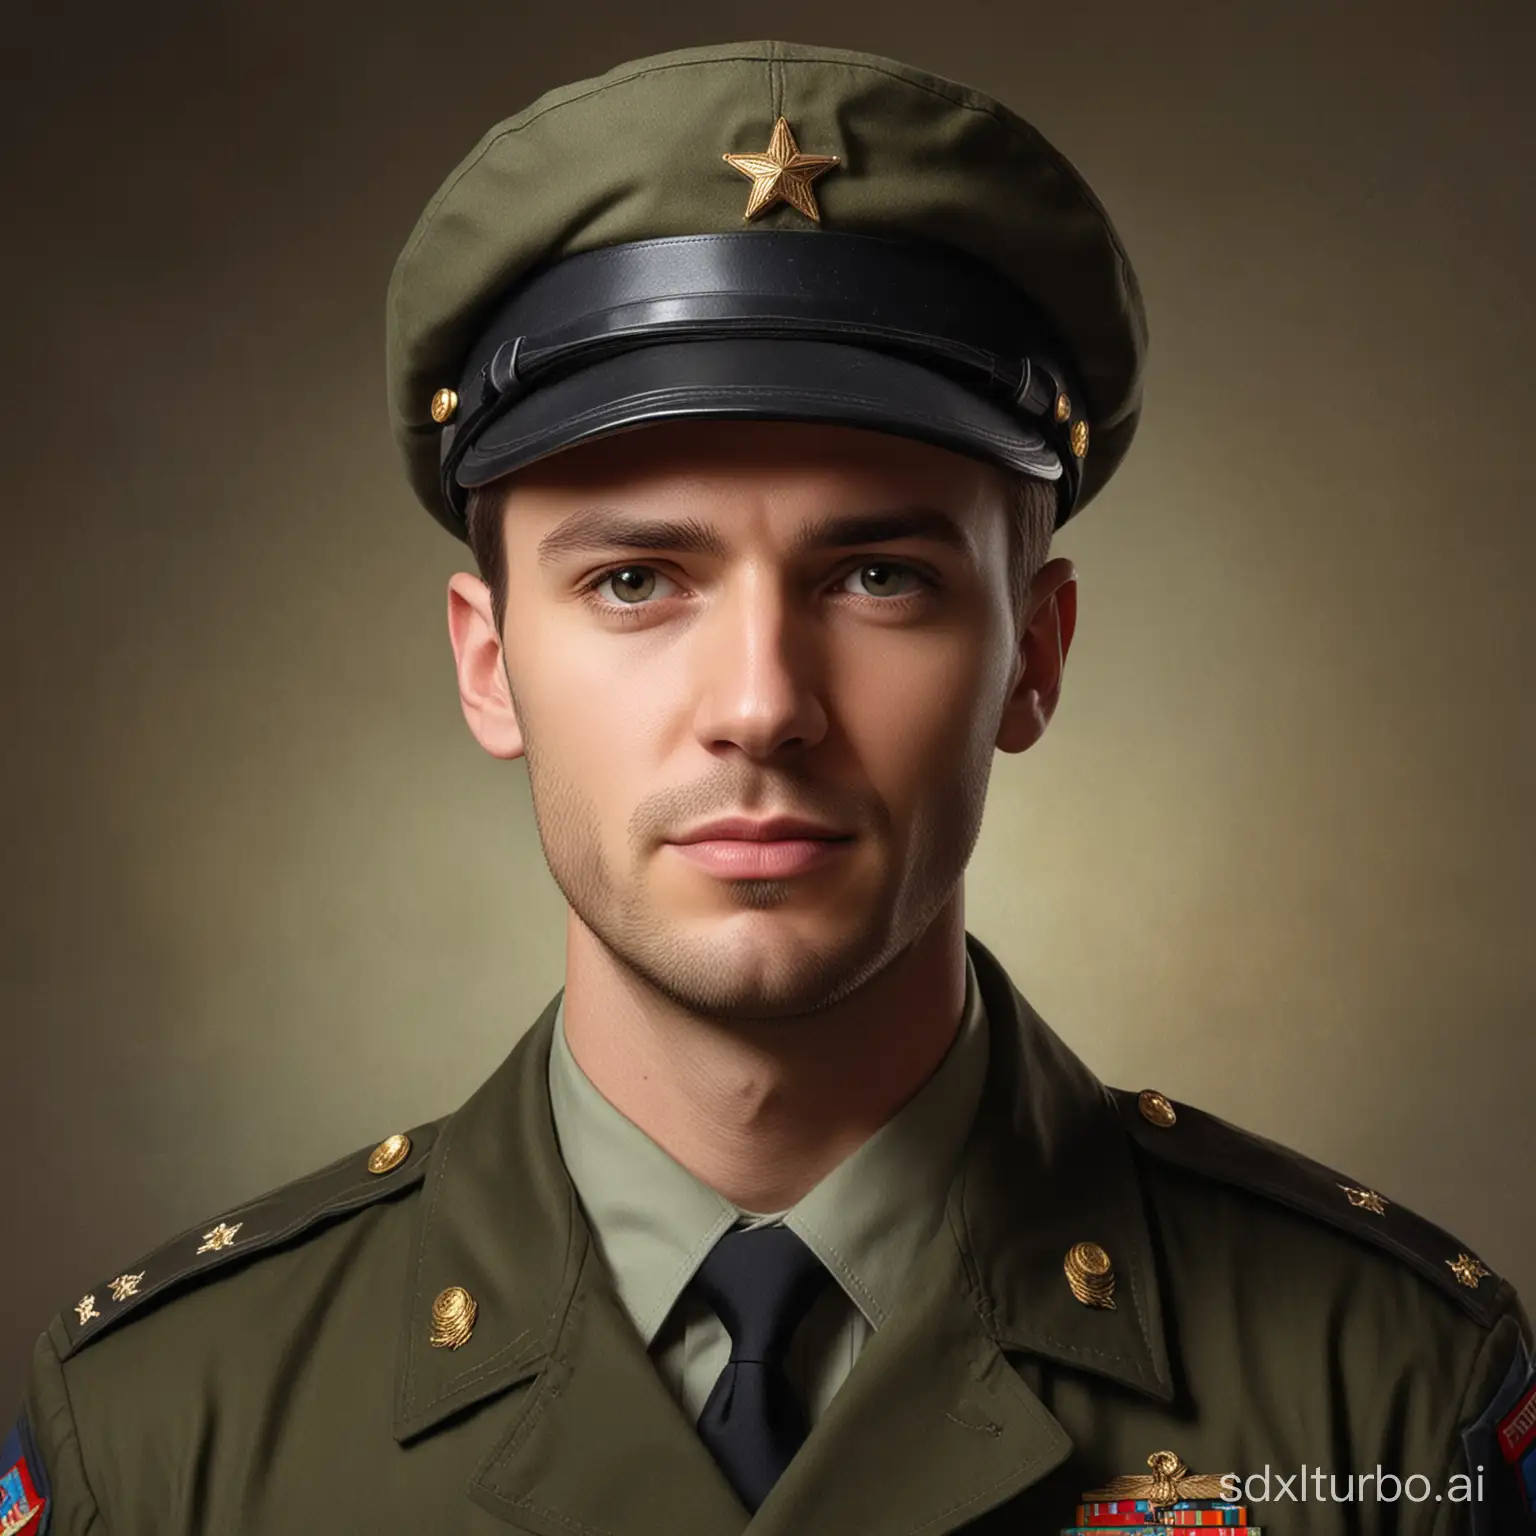 A man in a military cap